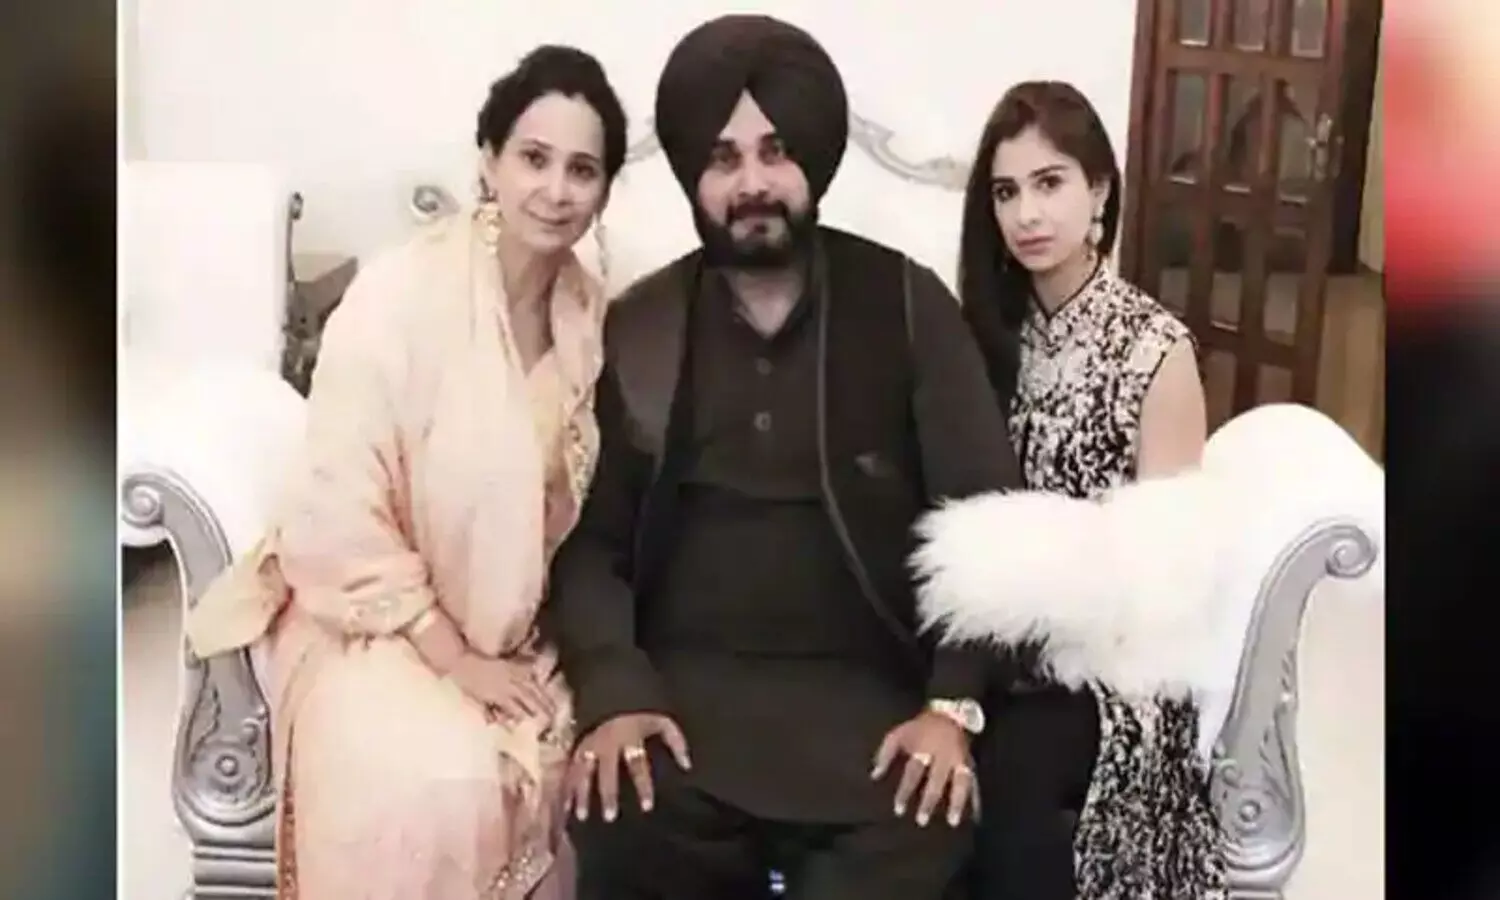 Punjab Election 2022: नवजोत सिंह सिद्धू की पत्नी के बाद अब उनकी बेटी राबिया सिद्धू भी चुनावी मैदान में उतर चुकी हैं। राबिया ने भी सिद्धू को सीएम चेहरा ना घोषित किए जाने पर अफसोस जाहिर किया है।